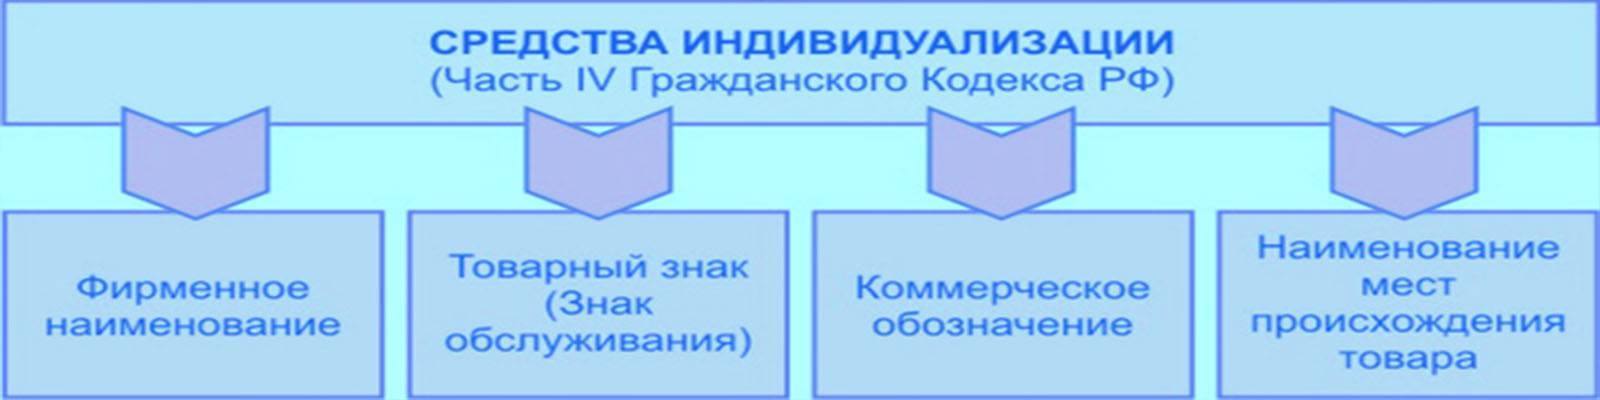 Средства индивидуализации юридического лица, индивидуализации продукции, выполняемых работ или услуг в российской федерации